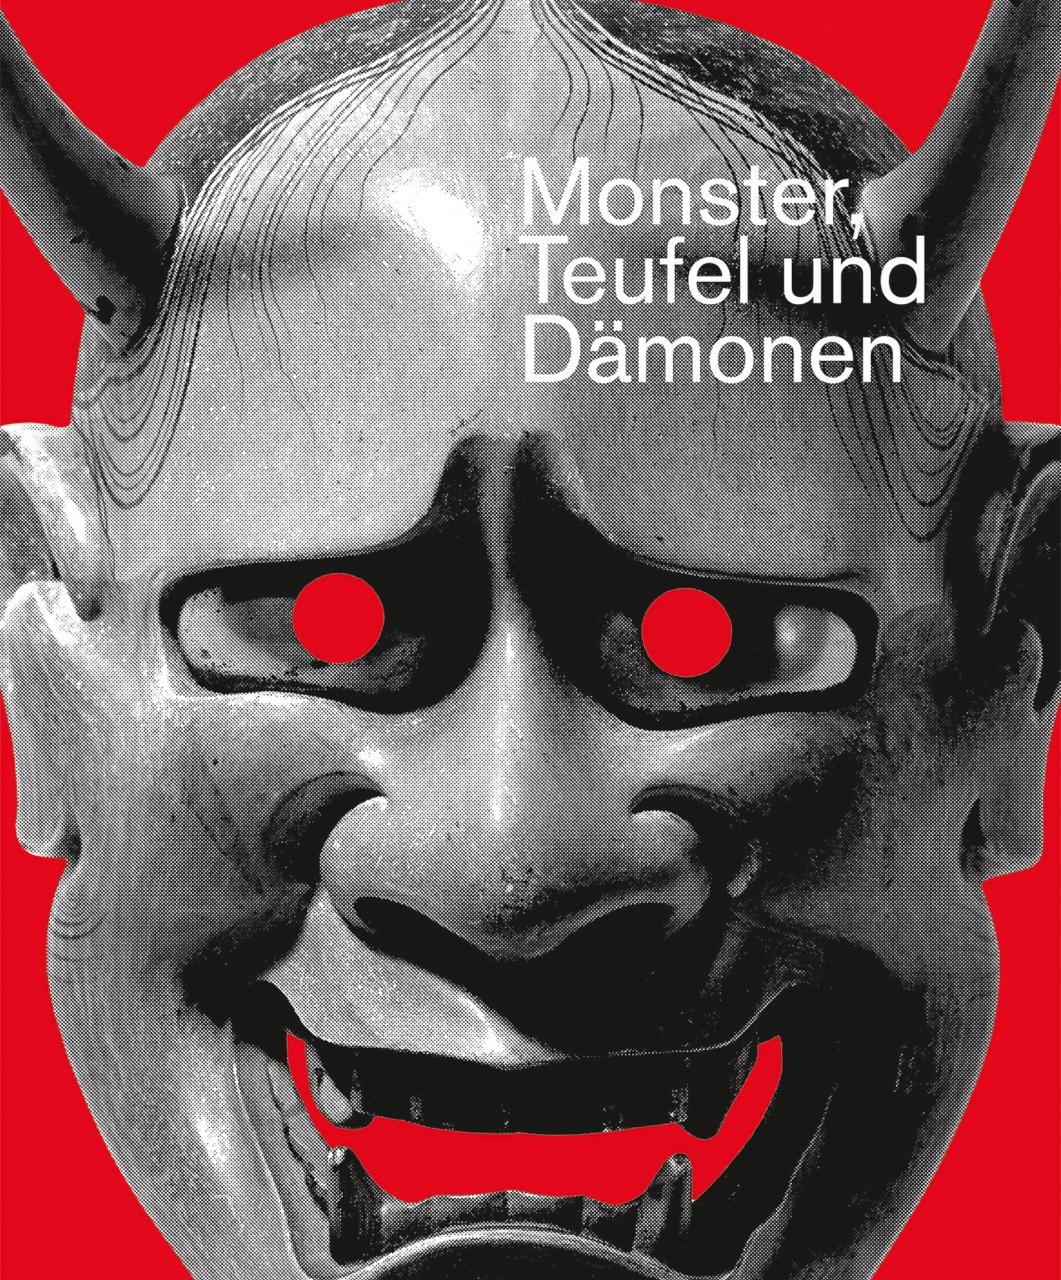 Raffinerie AG für Gestaltung (Zürich), Monster, Teufel und Dämonen, Plakat (Siebdruck), 2018, © Raffinerie AG für Gestaltung, Zürich / 100 Beste Plakate e. V.